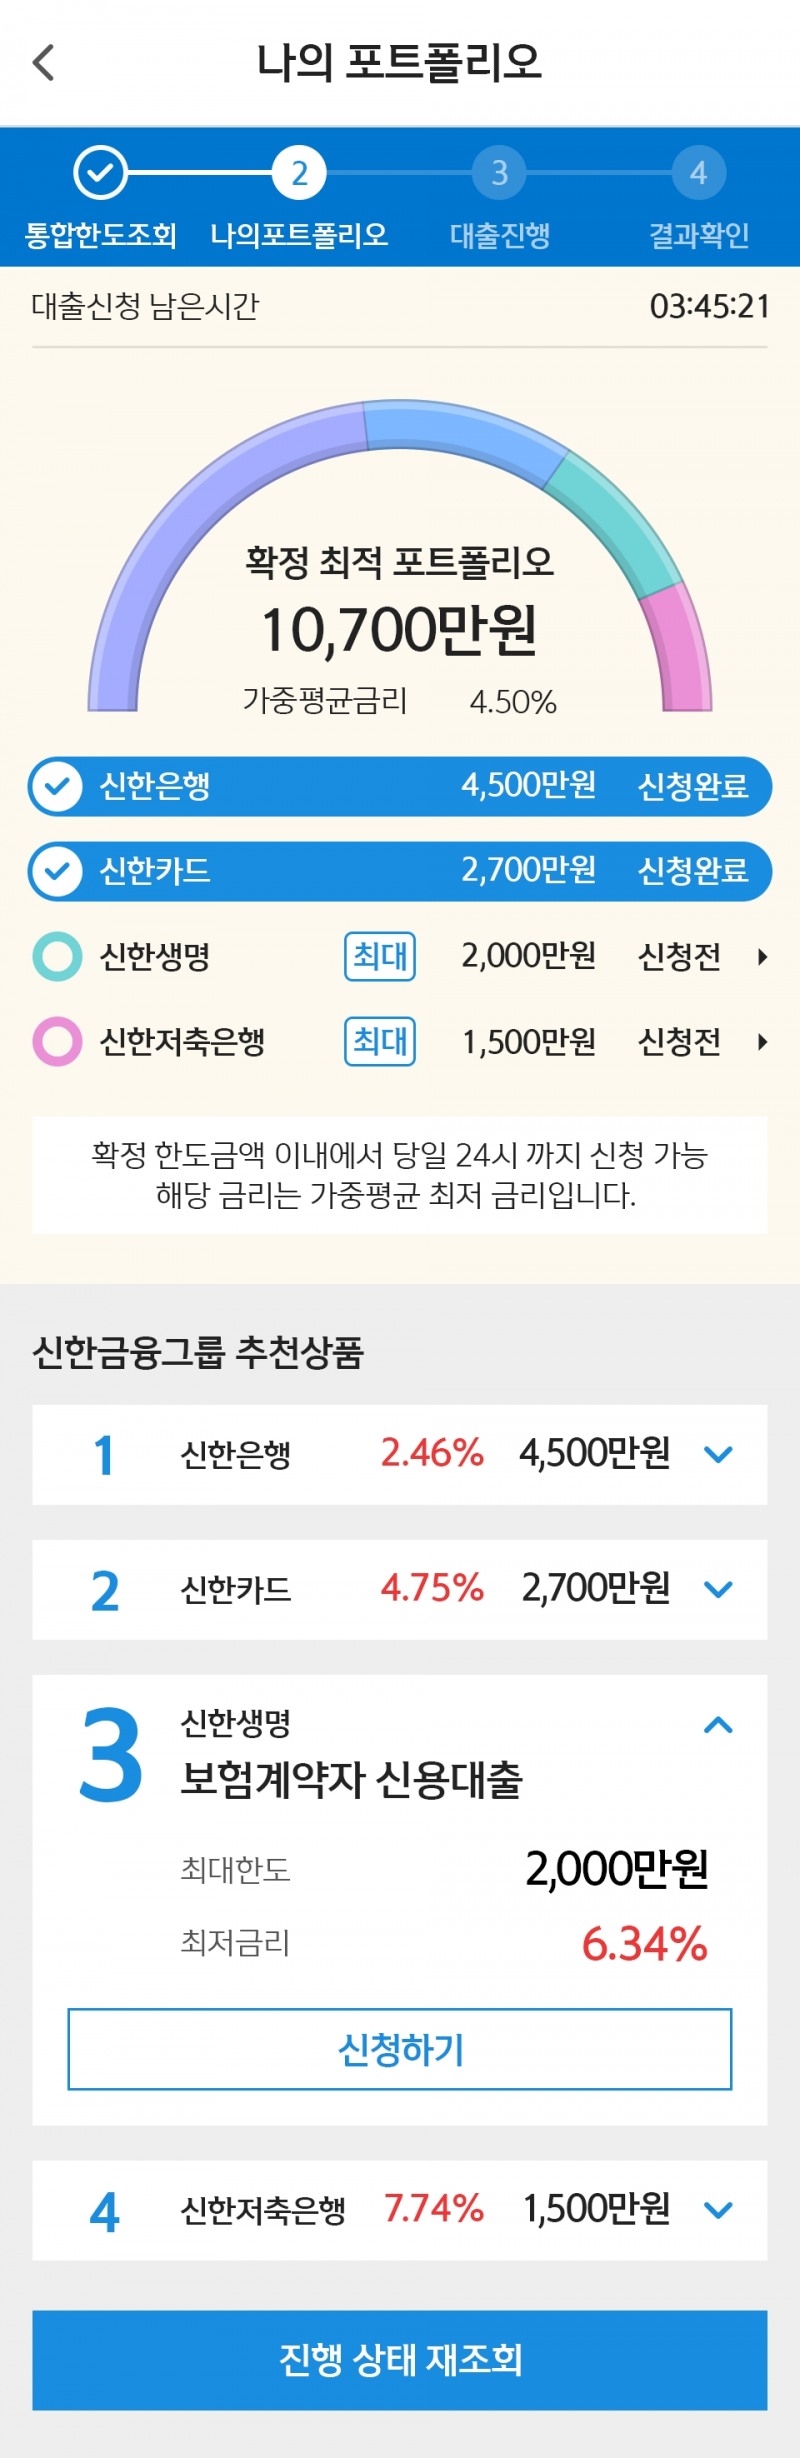 신한금융그룹, 통합 모바일 대출 플랫폼 '스마트 대출마당' 리뉴얼 오픈